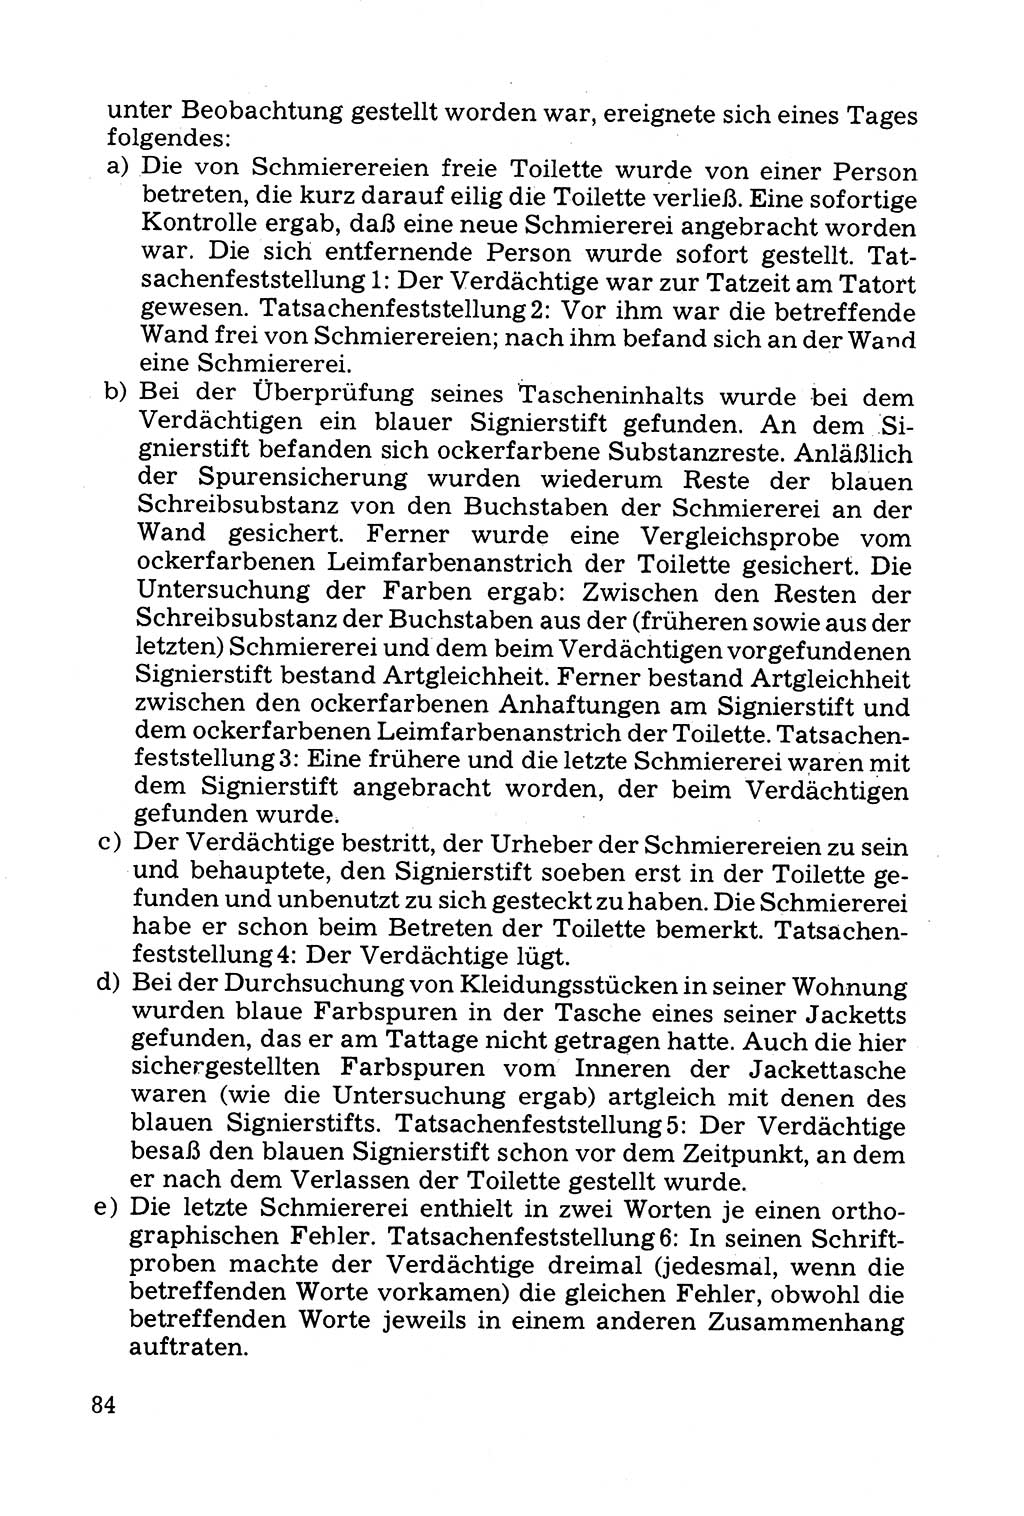 Grundfragen der Beweisführung im Ermittlungsverfahren [Deutsche Demokratische Republik (DDR)] 1980, Seite 84 (Bws.-Fhrg. EV DDR 1980, S. 84)